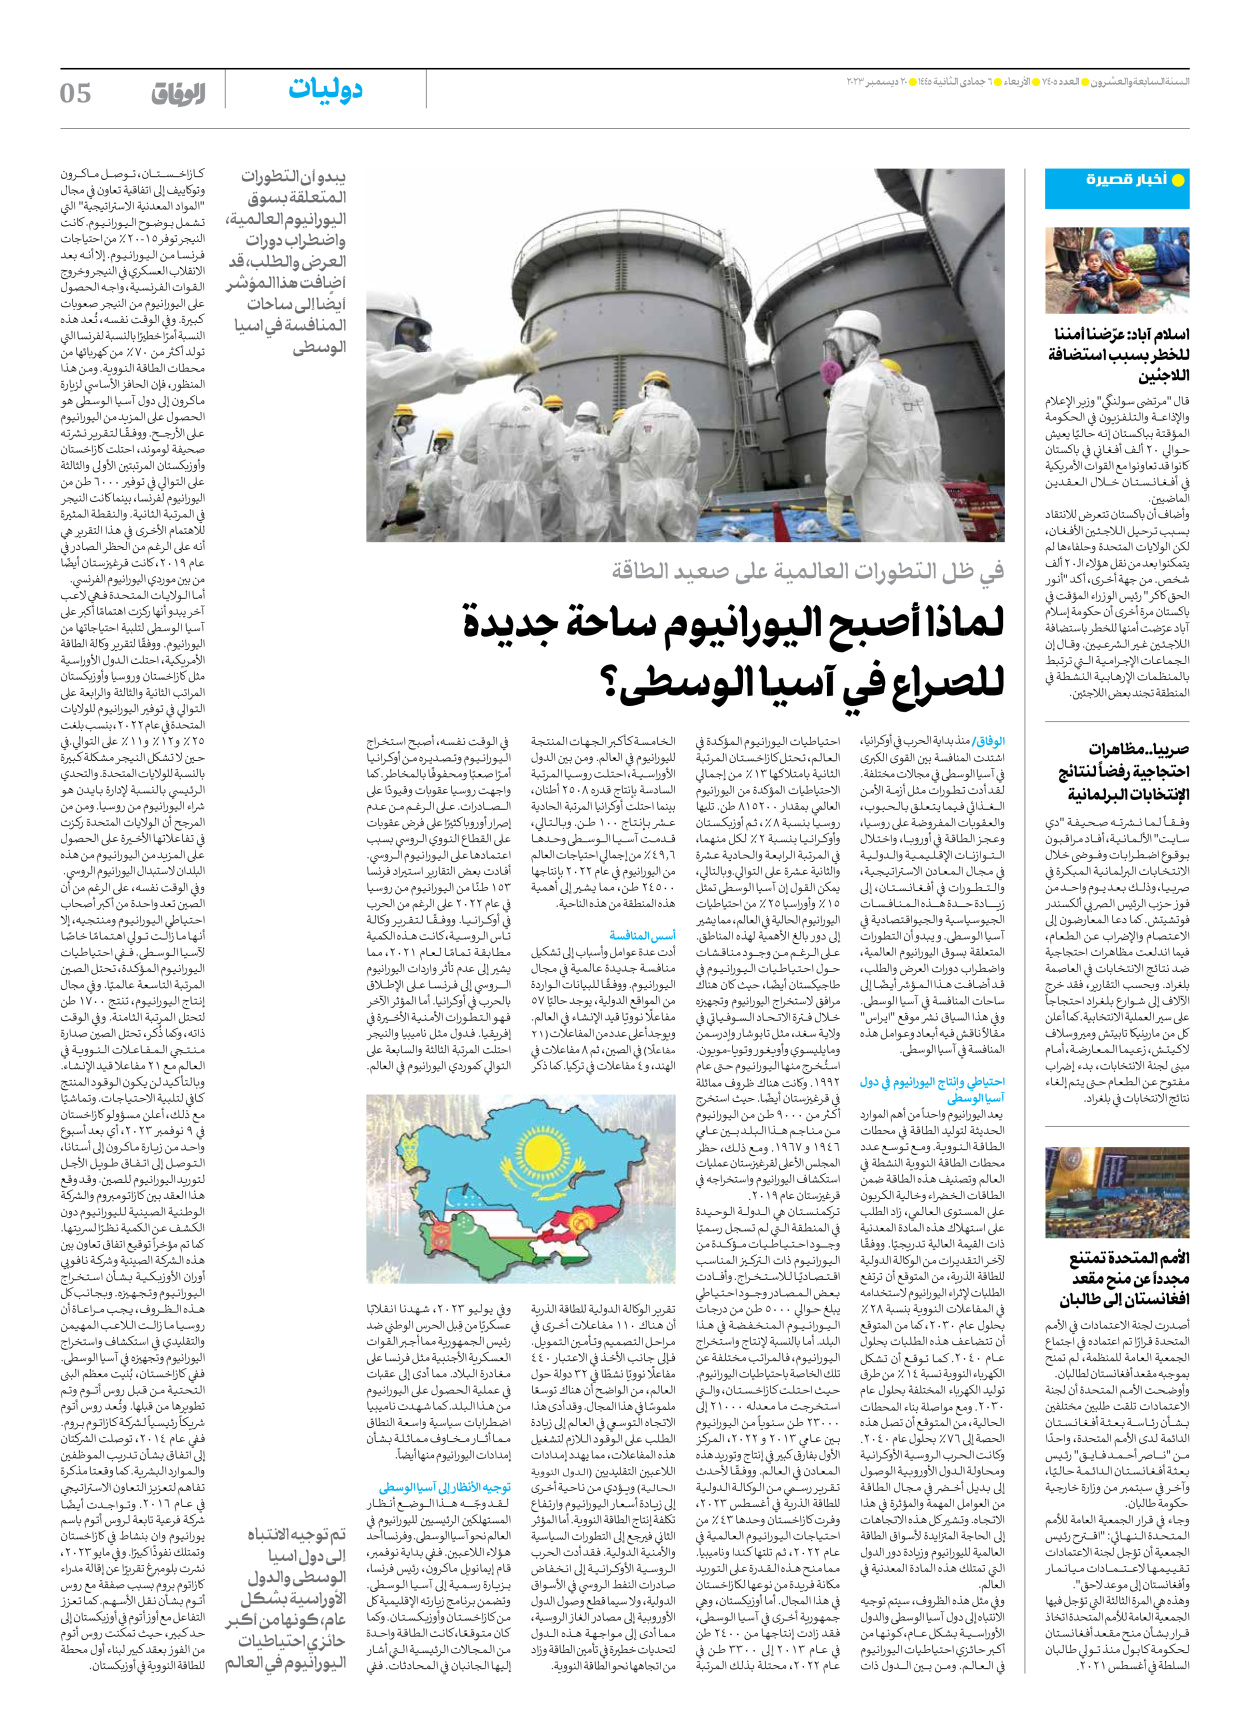 صحیفة ایران الدولیة الوفاق - العدد سبعة آلاف وأربعمائة وخمسة - ٢٠ ديسمبر ٢٠٢٣ - الصفحة ٥